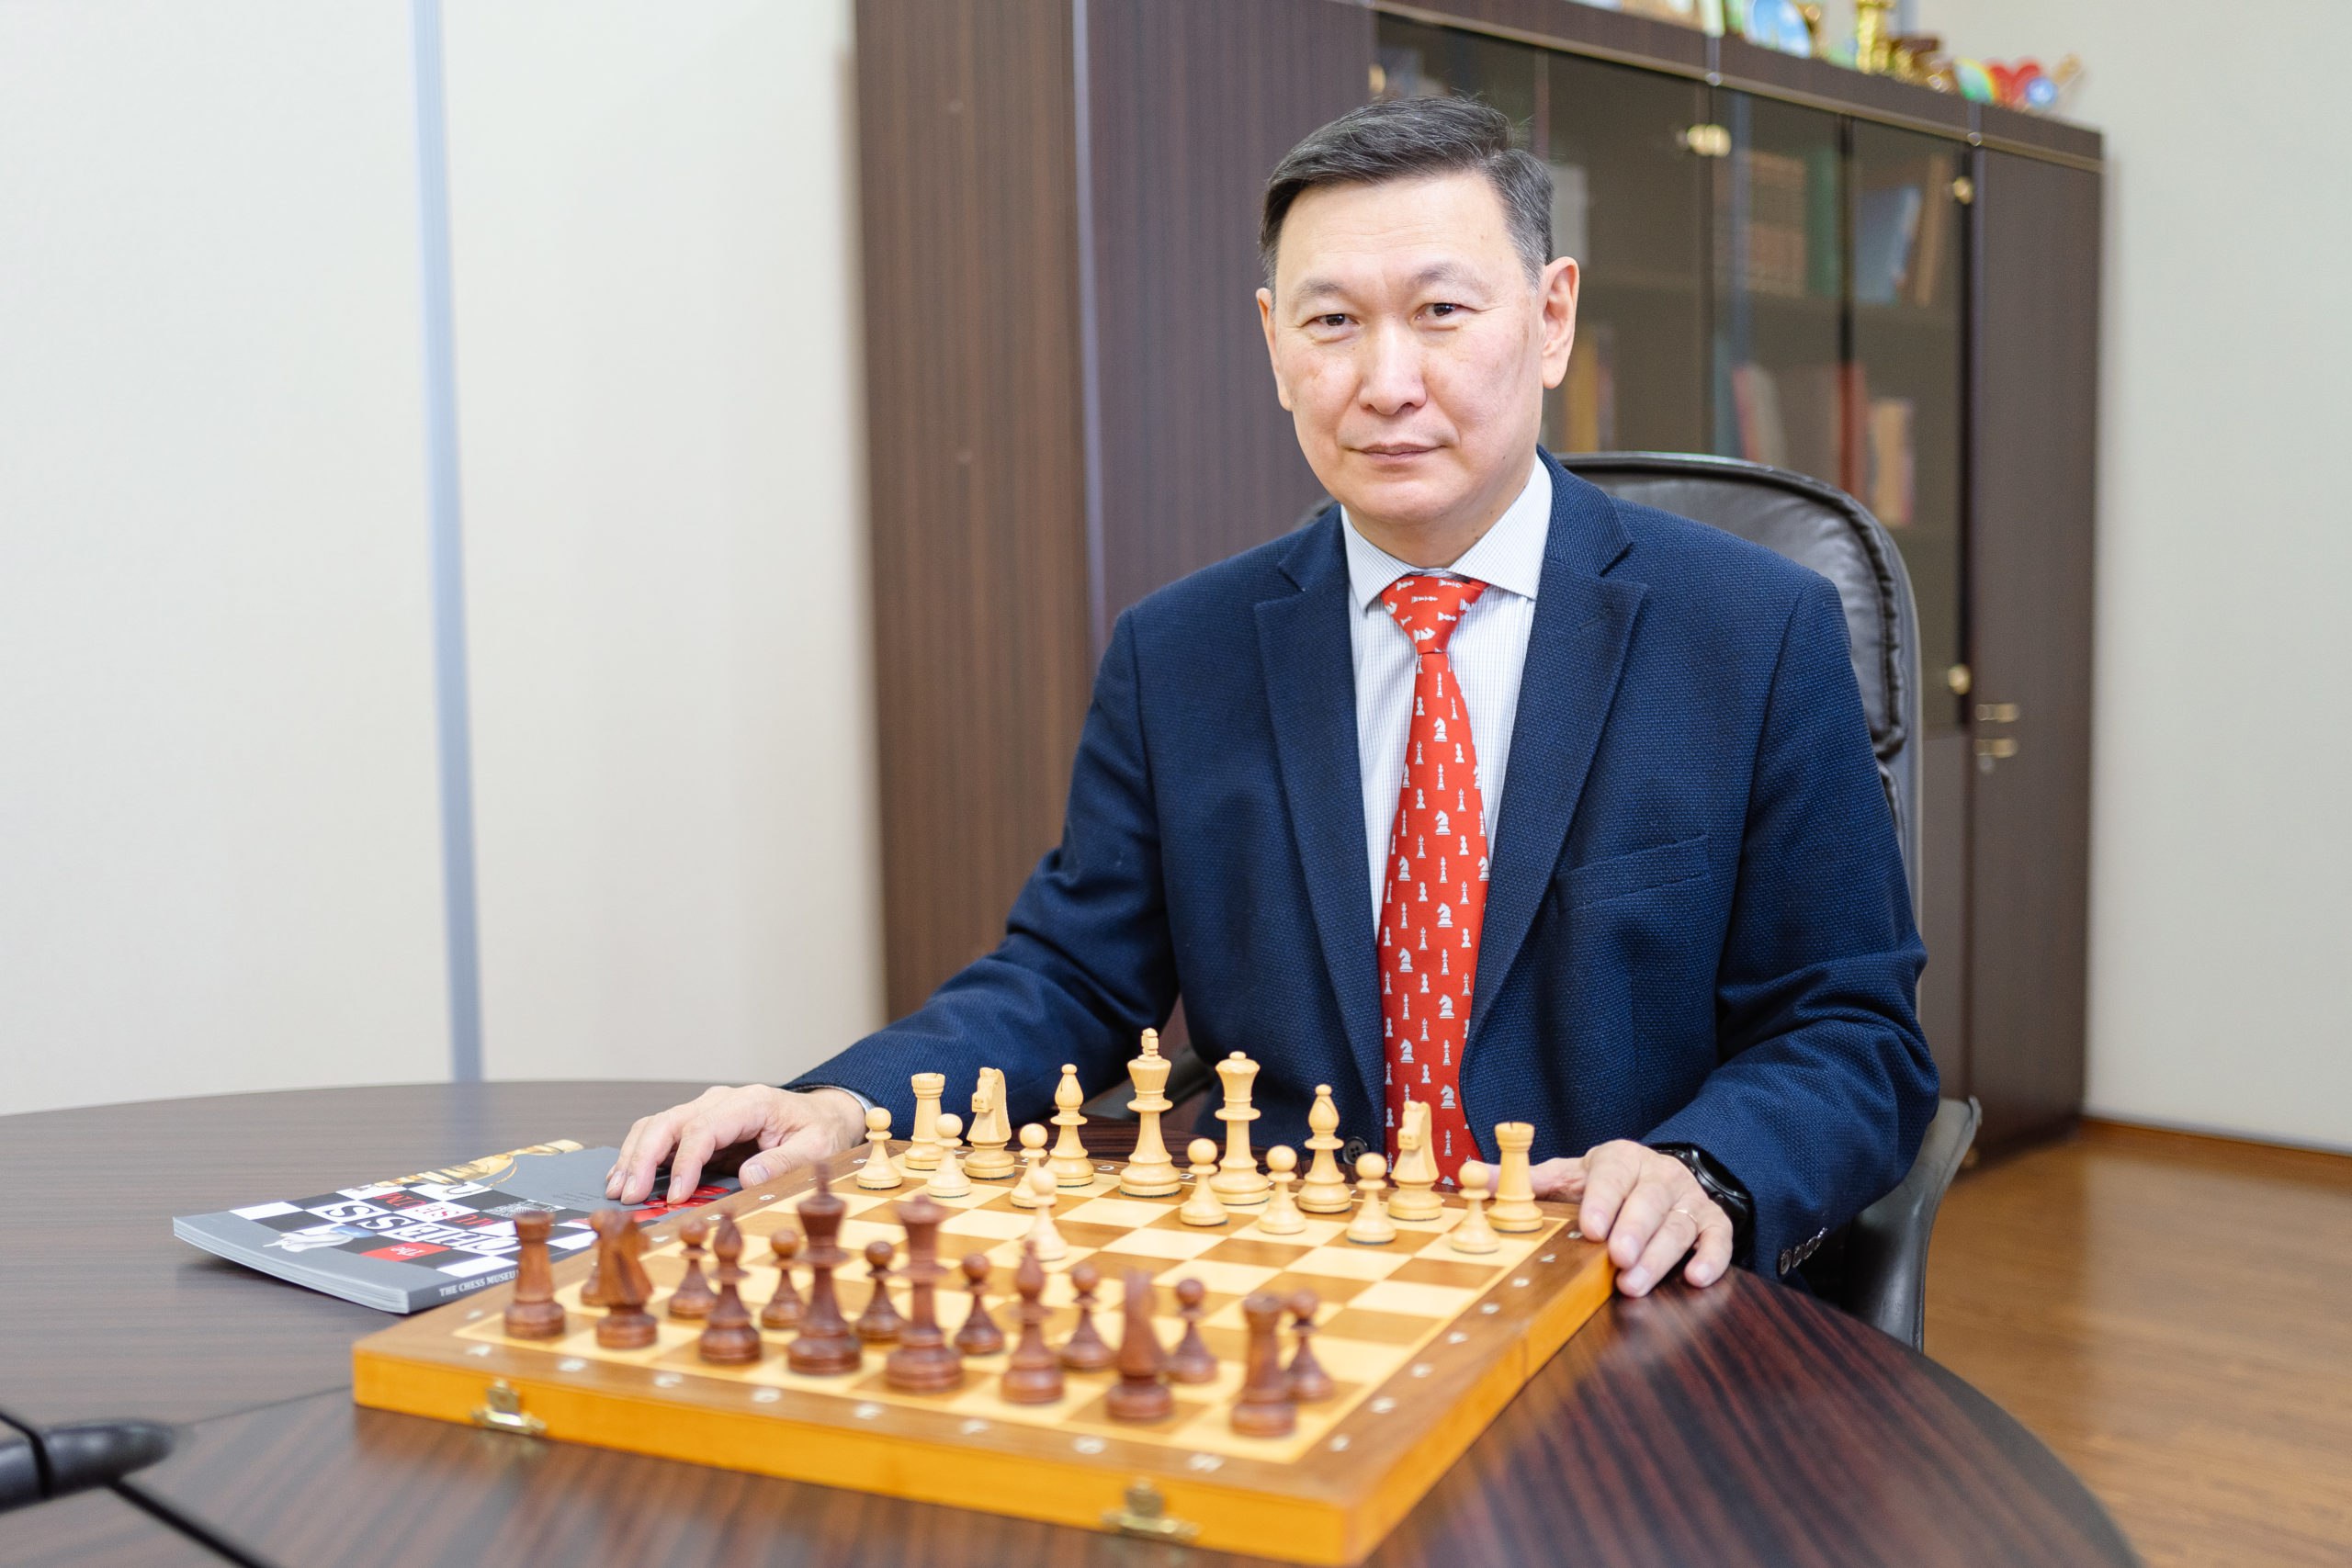 Шахматный марафон пройдет в Якутске 20 июля